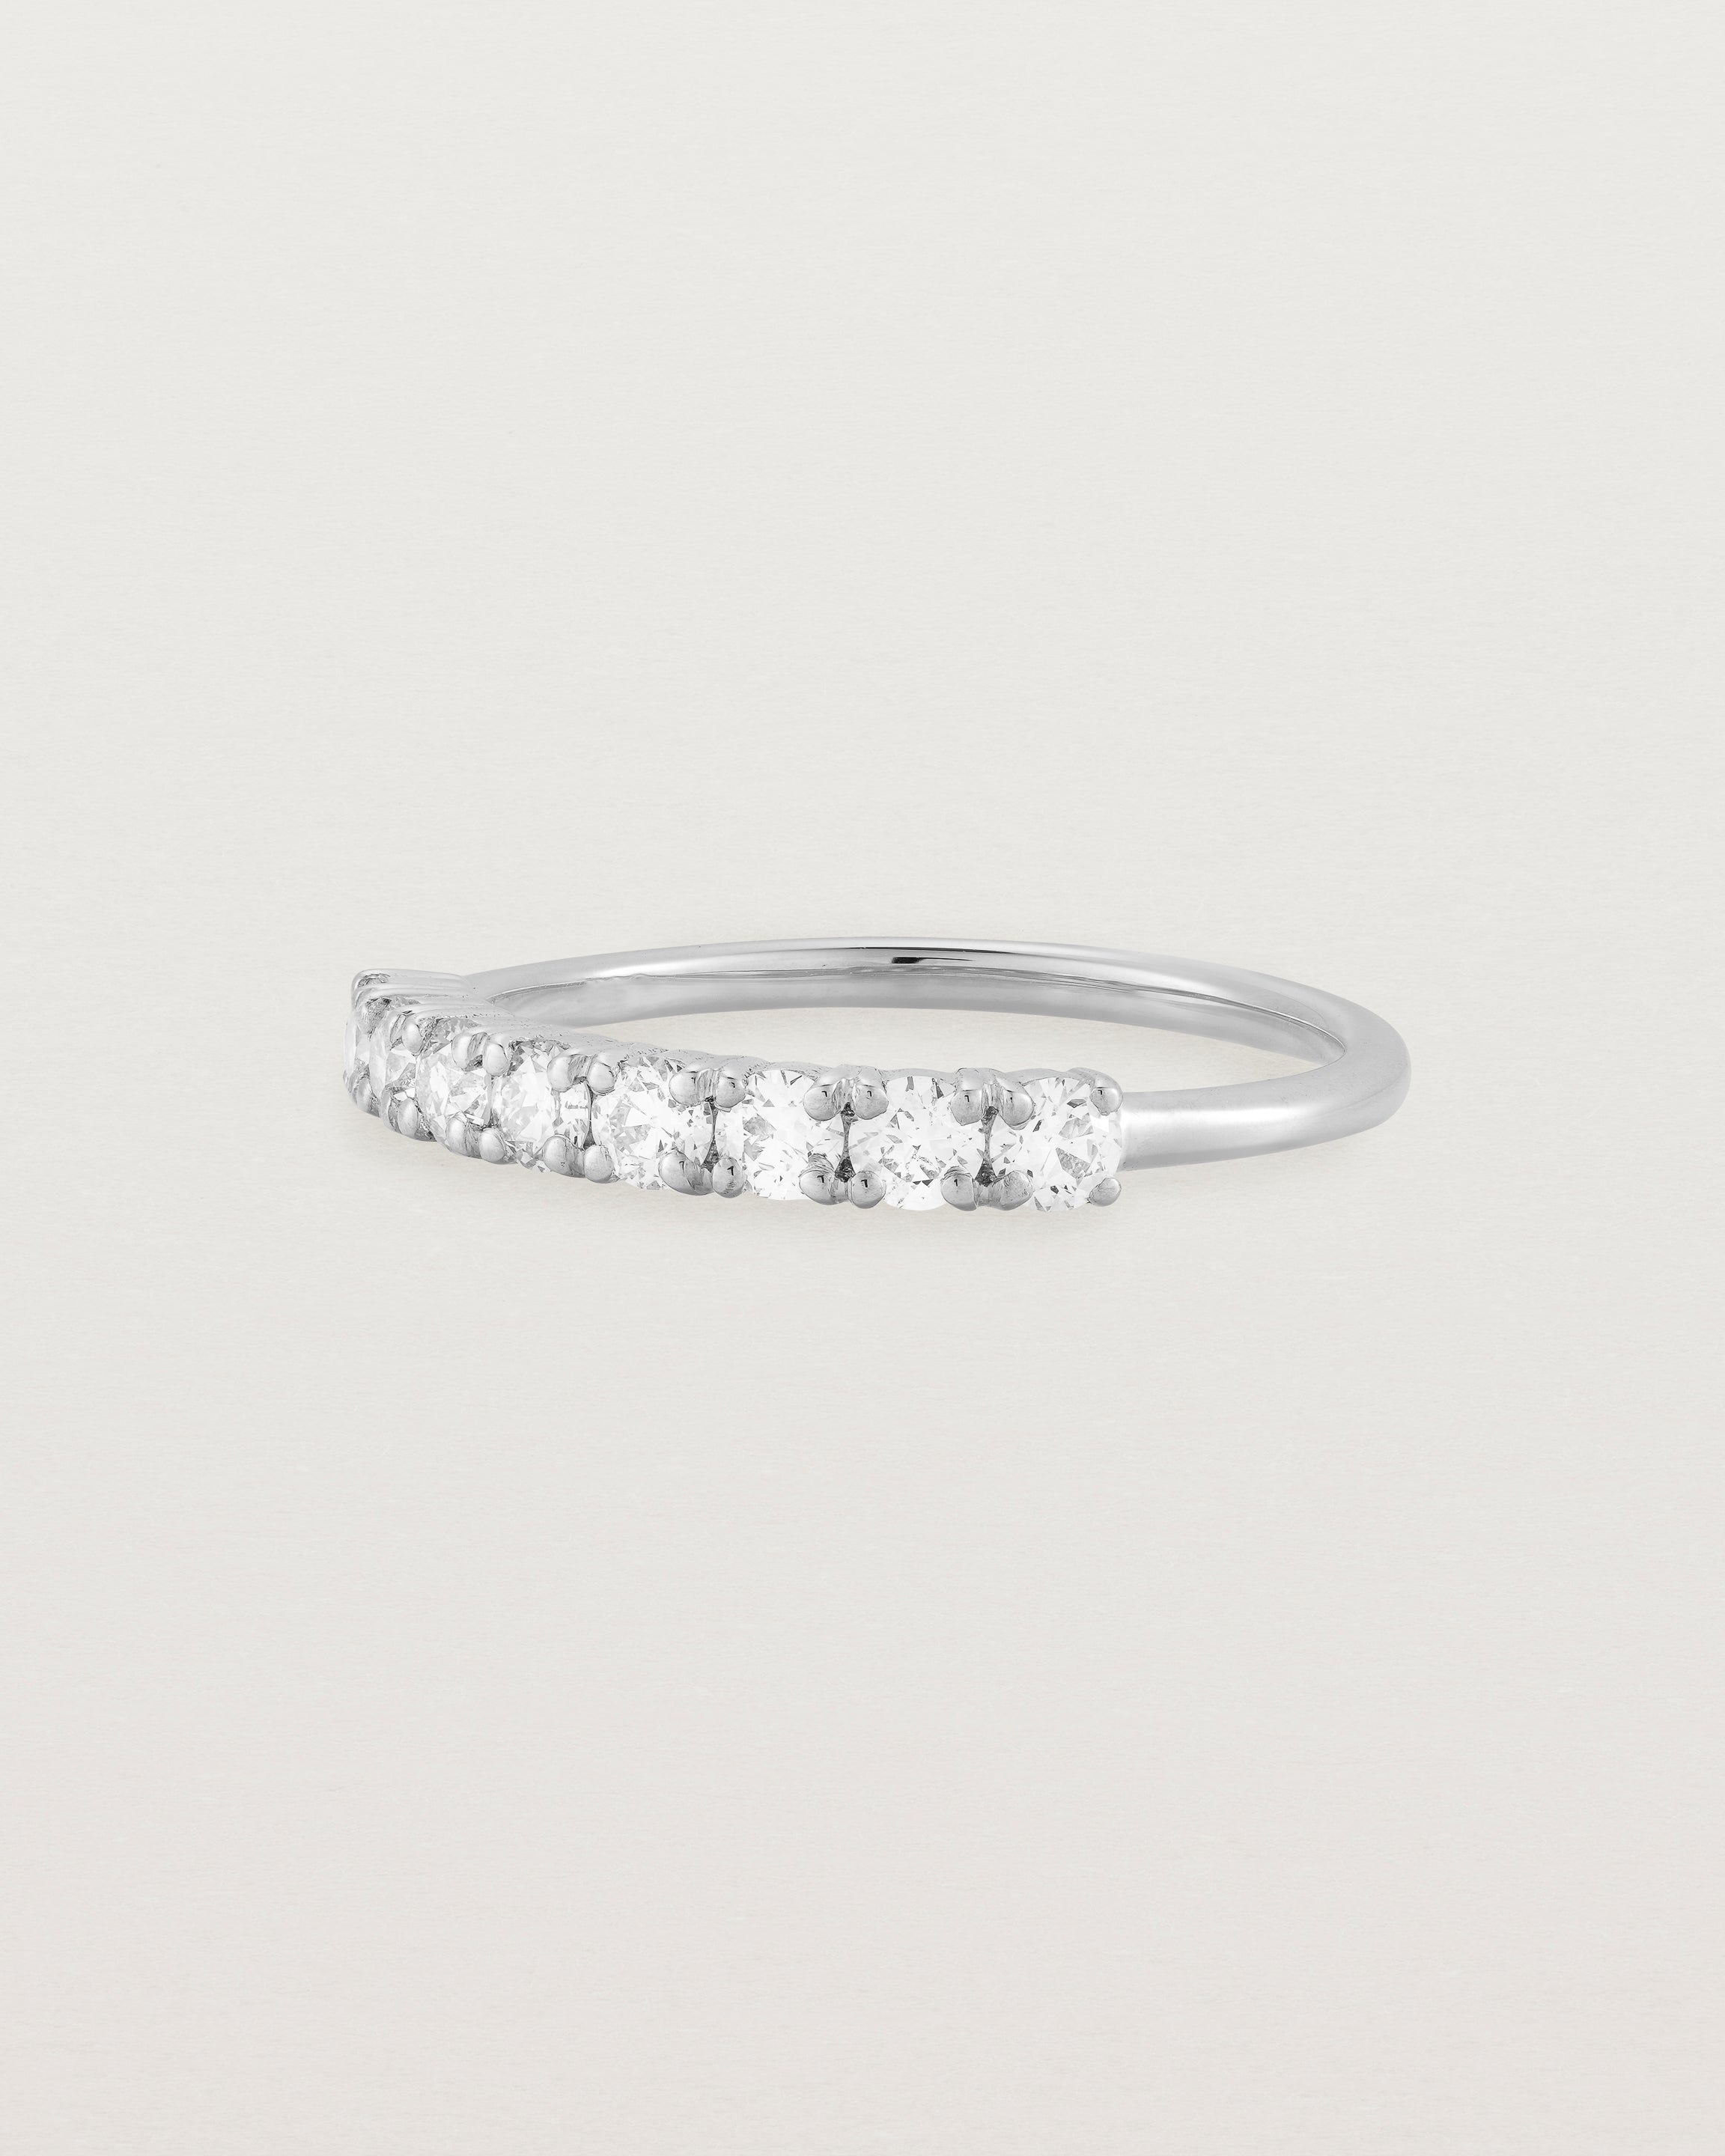 White Gold Diamond ring featuring seven white diamonds